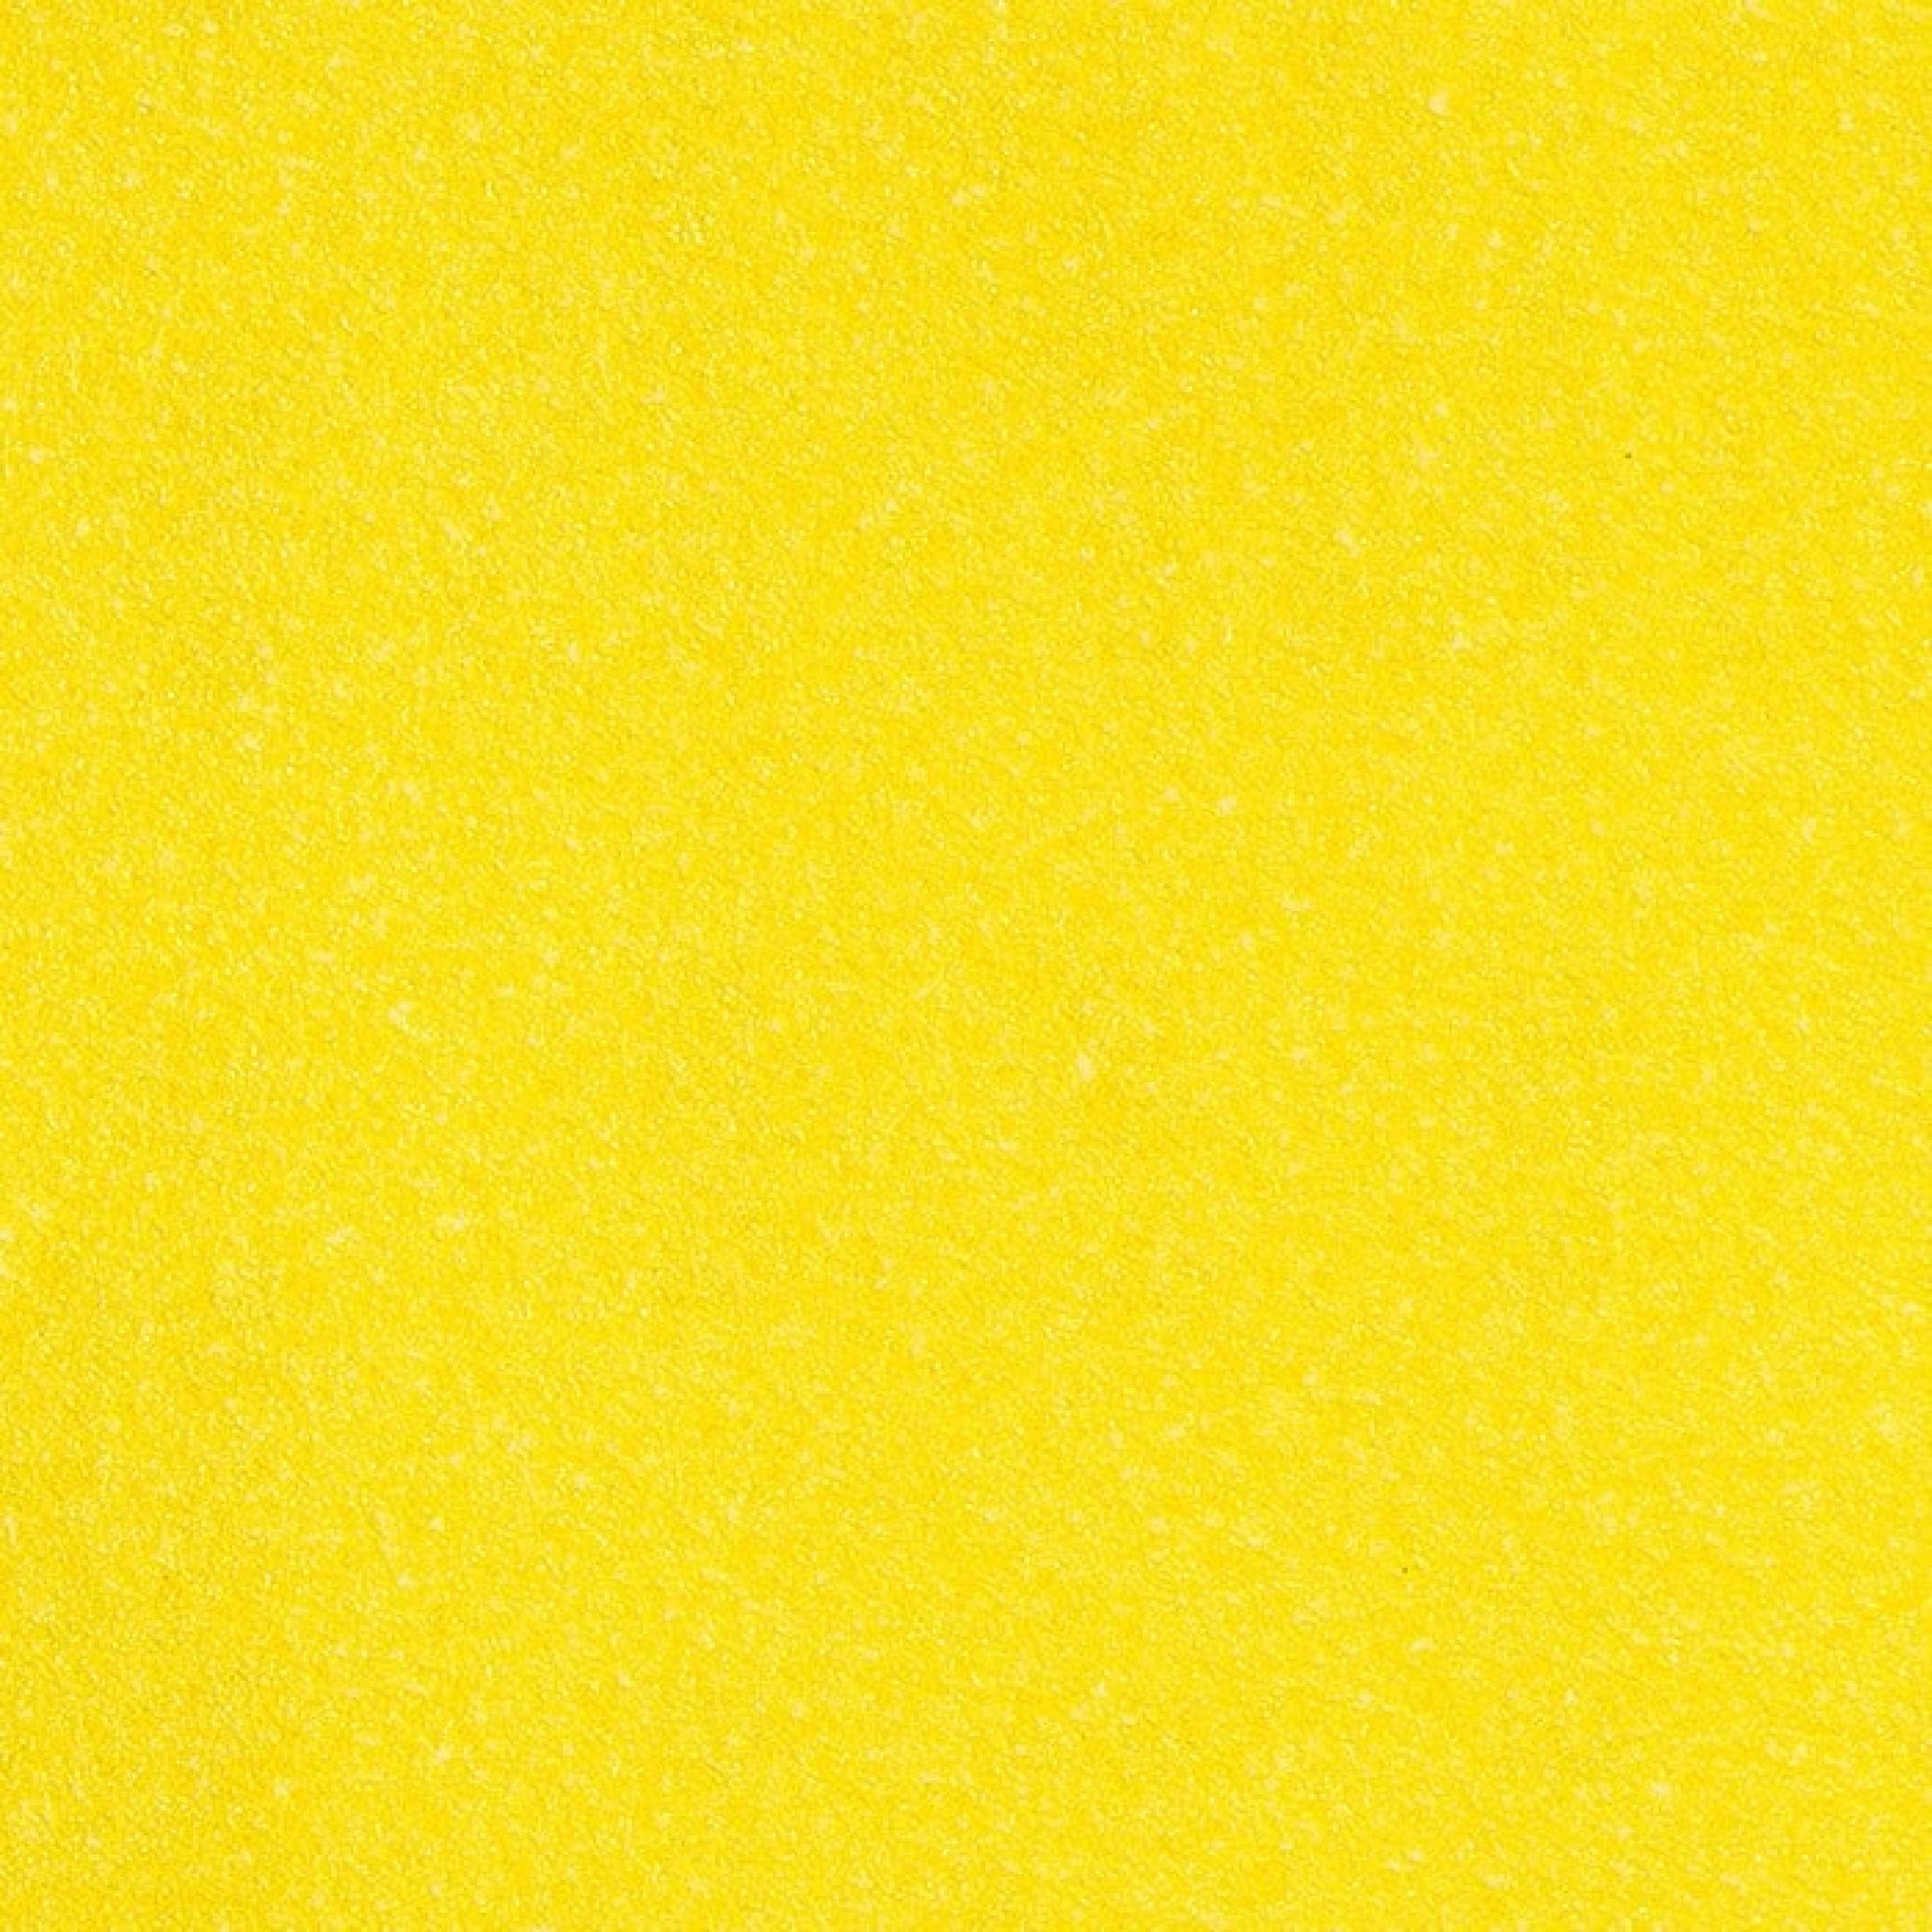 Mirka® Yellow Abrasive Soft 1674802540, Ø 225 mm, P40, A, 27-fach gelocht, Kletthaftend, Schleifscheibe mit Aluminiumoxidkorn, Für Finish- und Polierarbeiten an Werkstücken